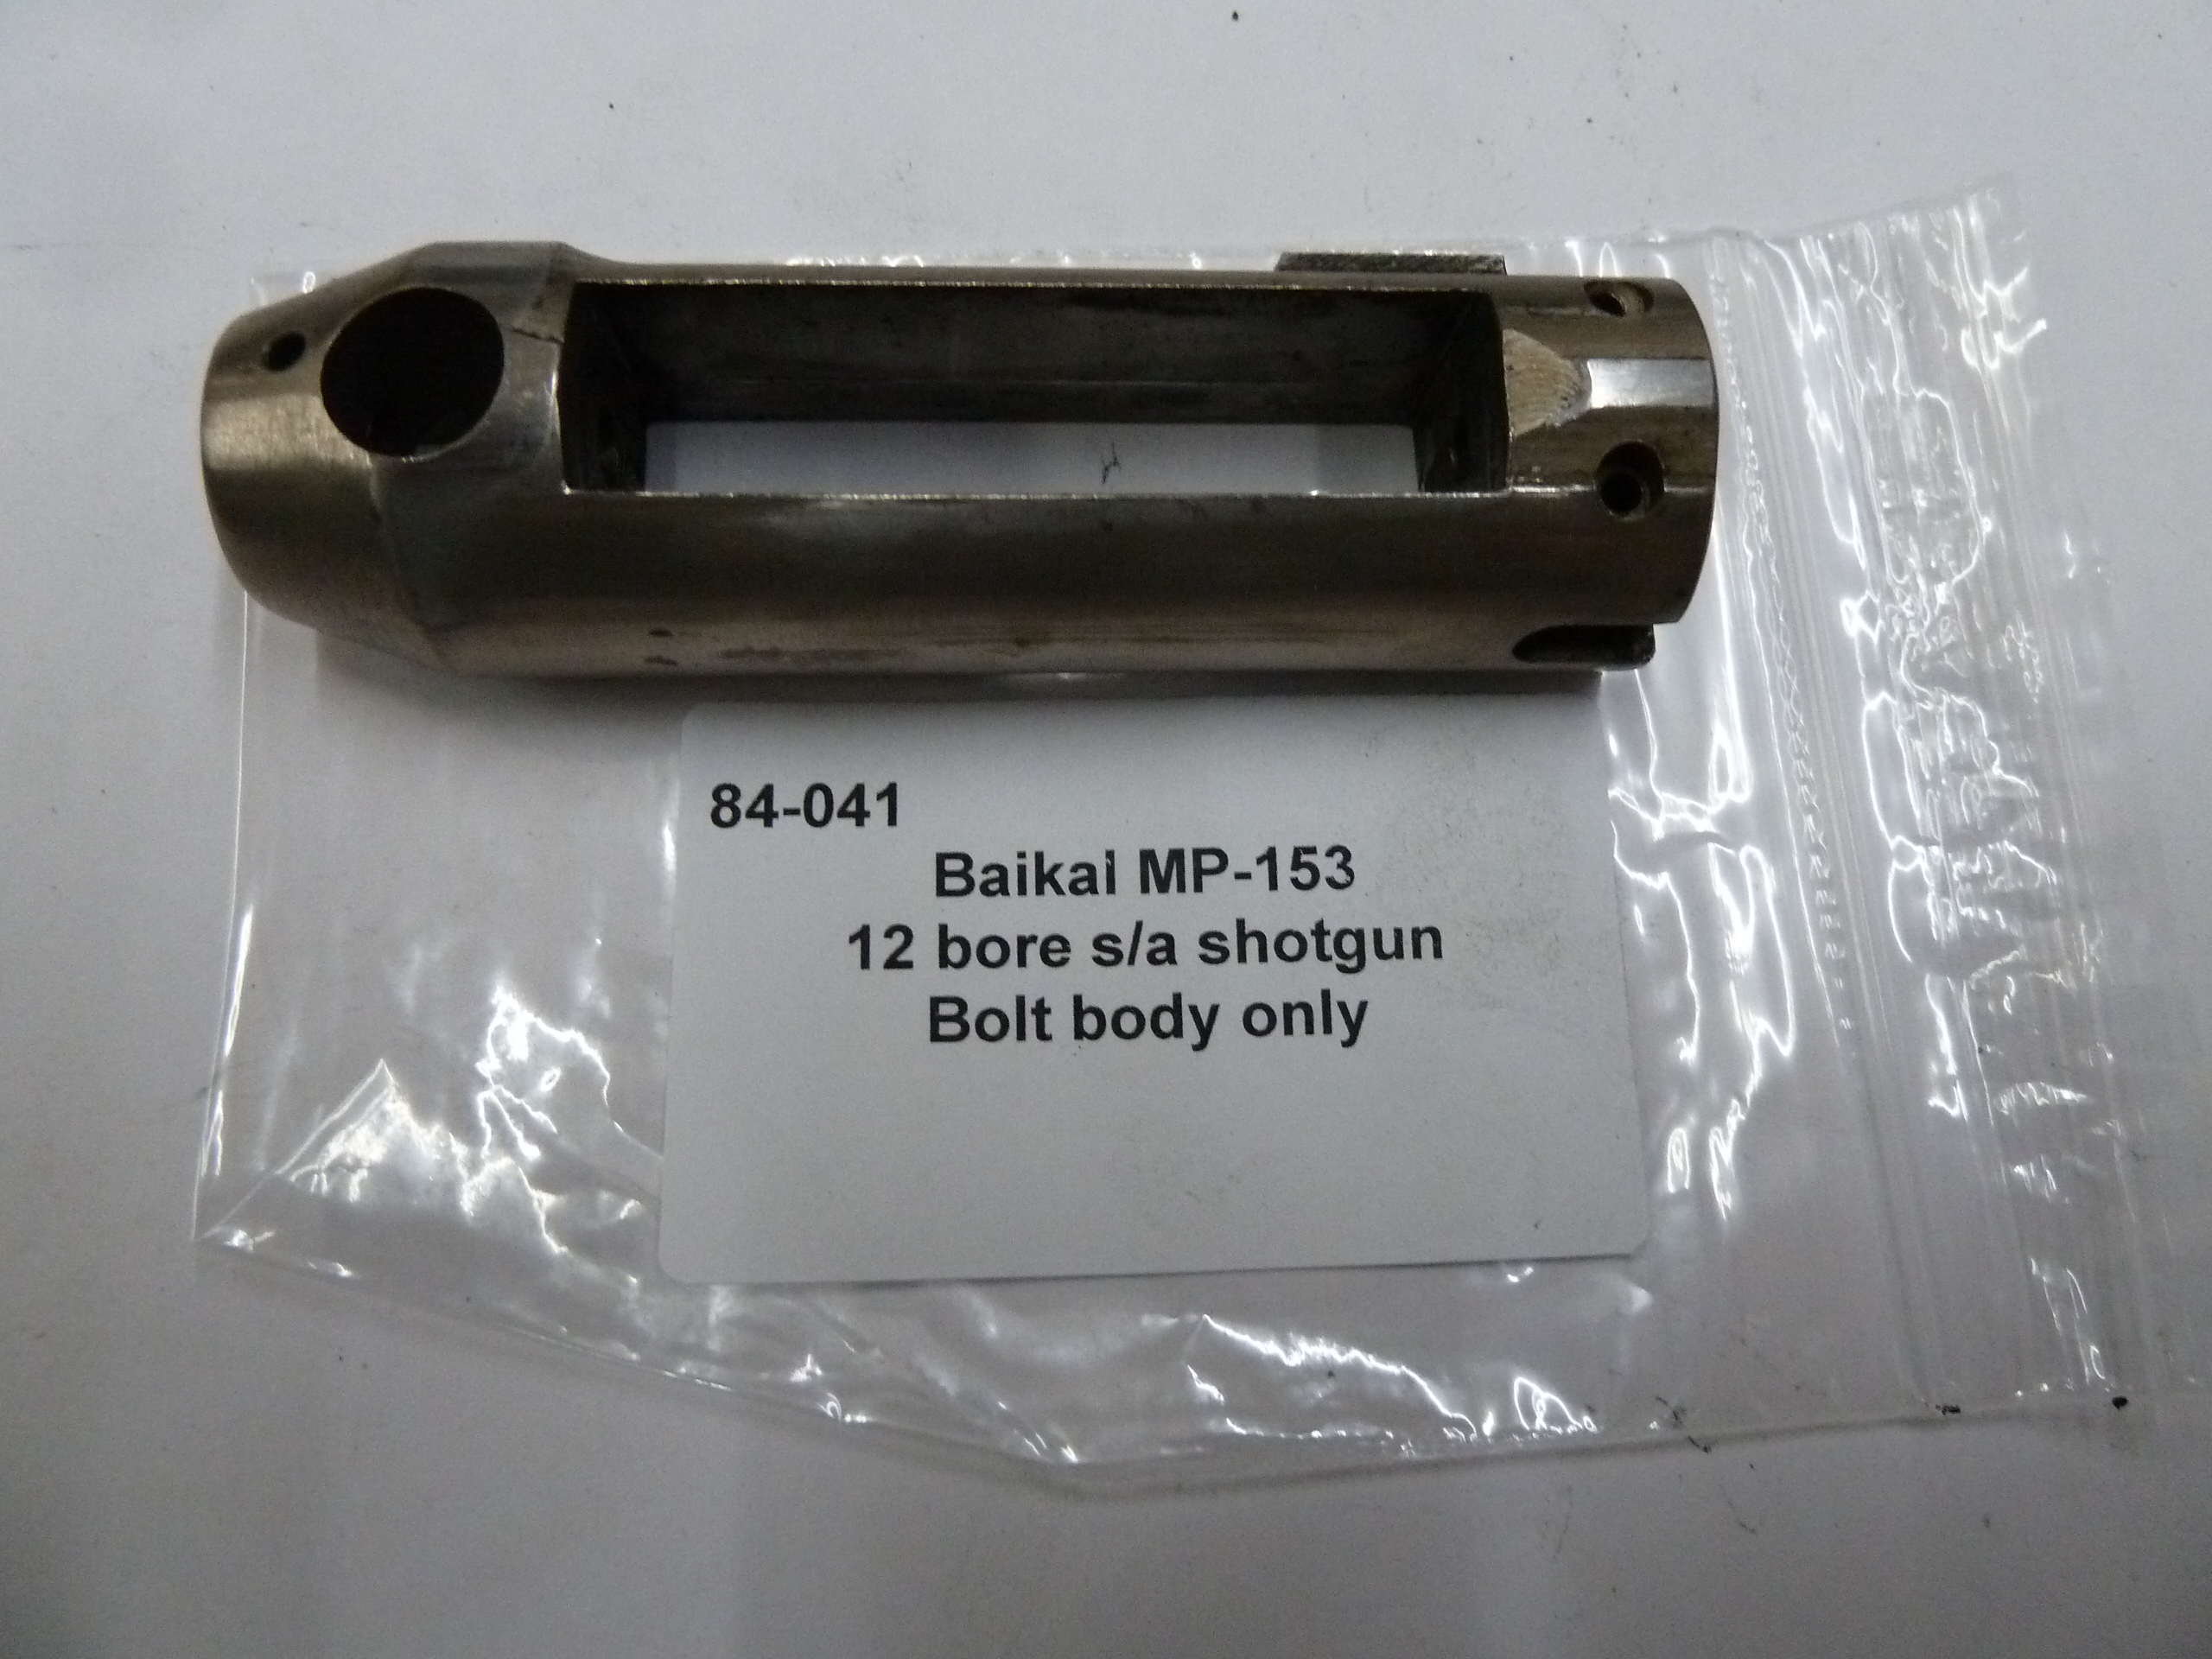 84-041 Baikal MP-153 sa shotgun bolt body only (1)